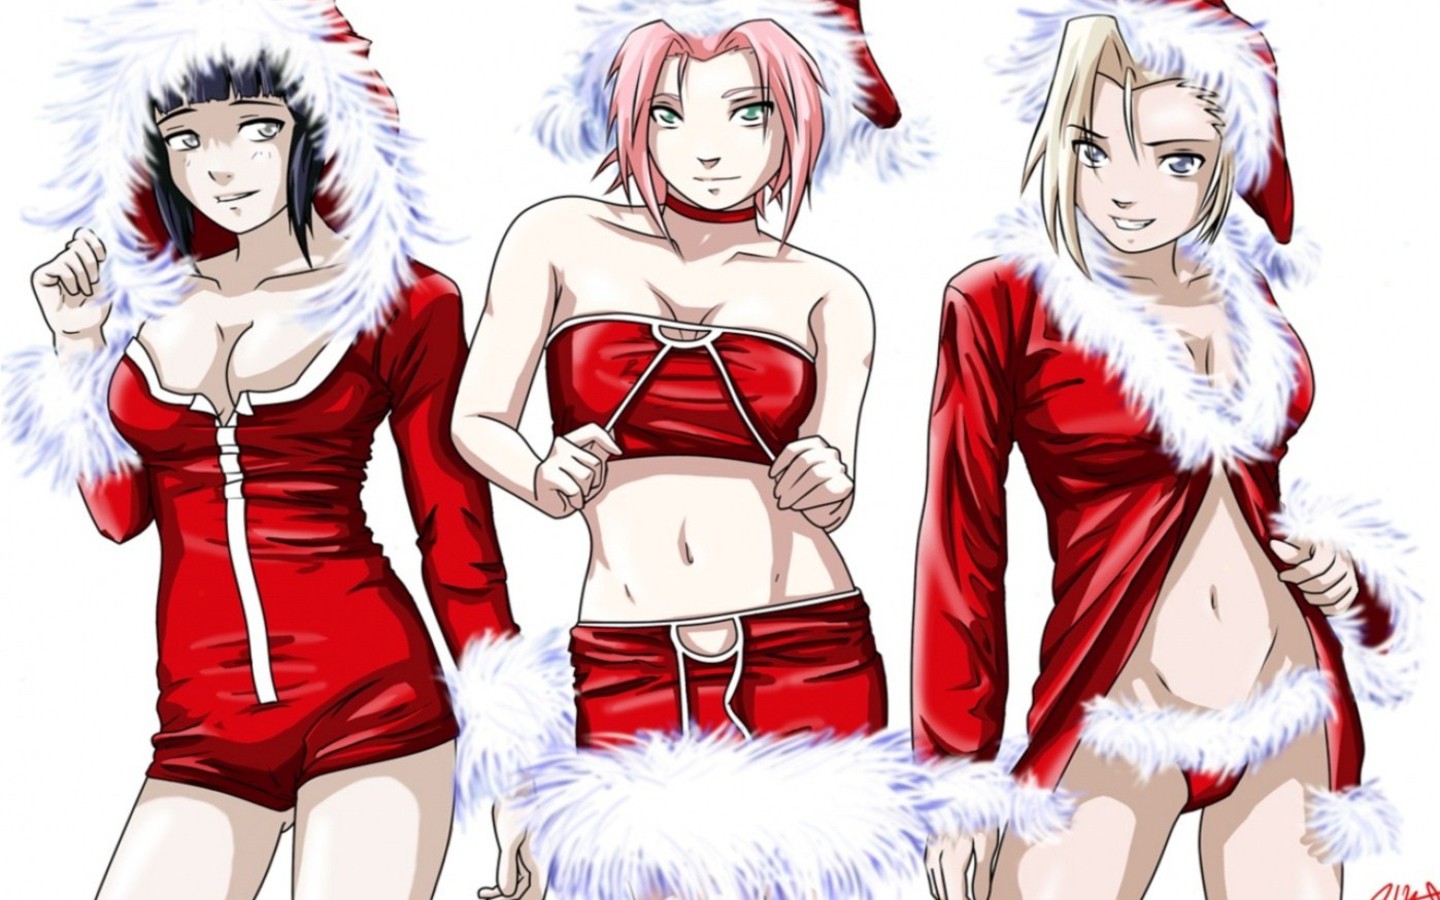 http://1.bp.blogspot.com/-pjhQvoUONk8/TuqhxqUAUfI/AAAAAAAATyk/PZga4lMhQKQ/s1600/anime-girls-christmas-wallpaper.jpg